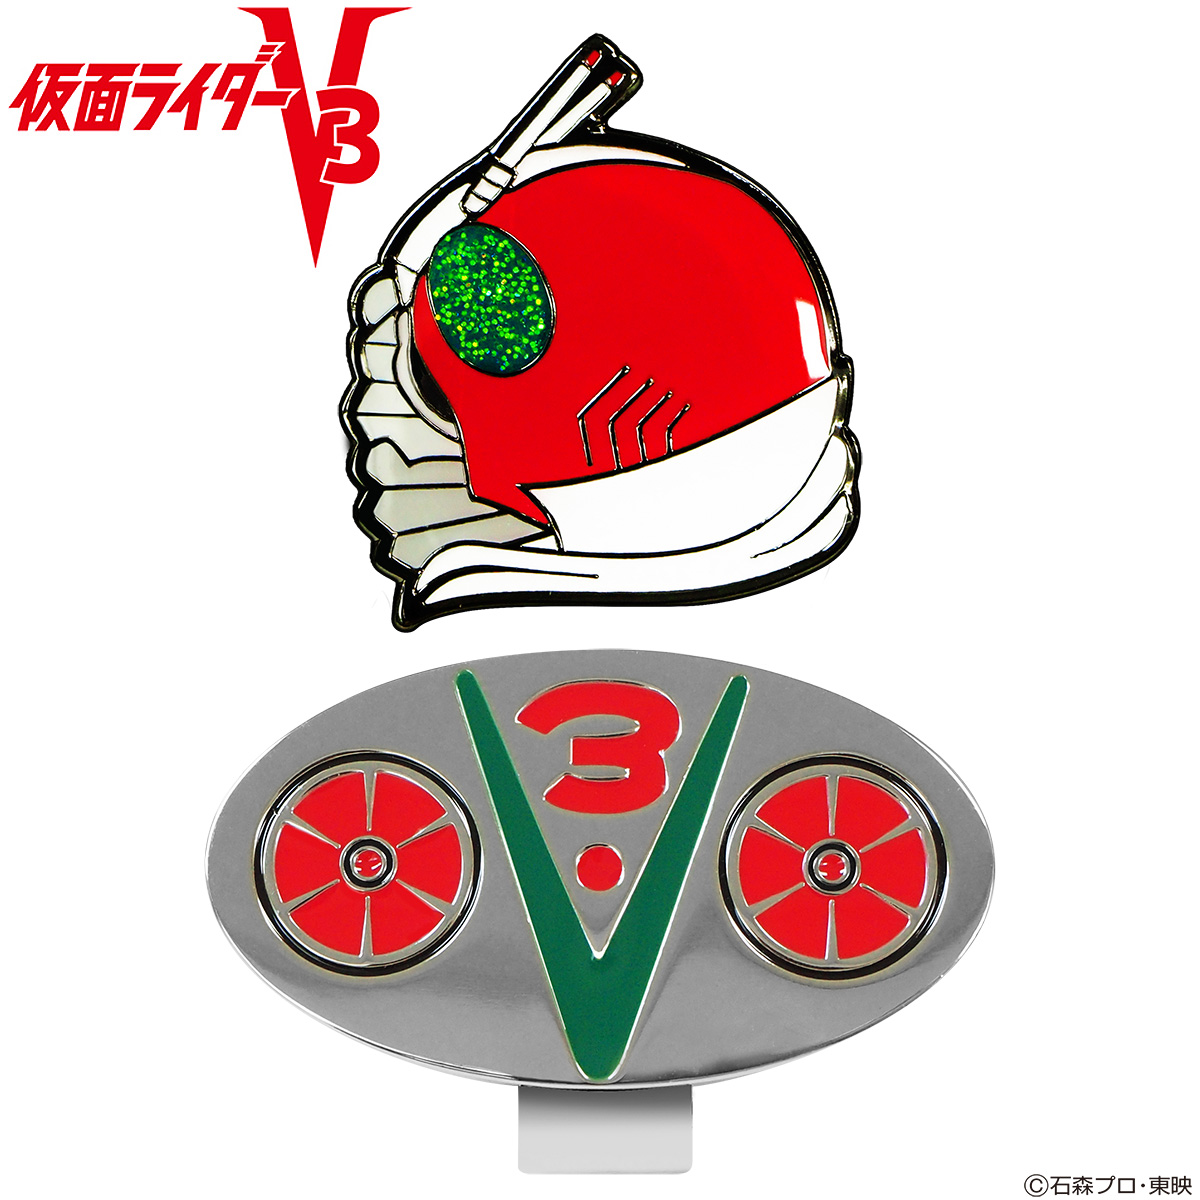 仮面ライダーV3 ゴルフマーカー 「 KRM005 」 【あす楽対応】画像